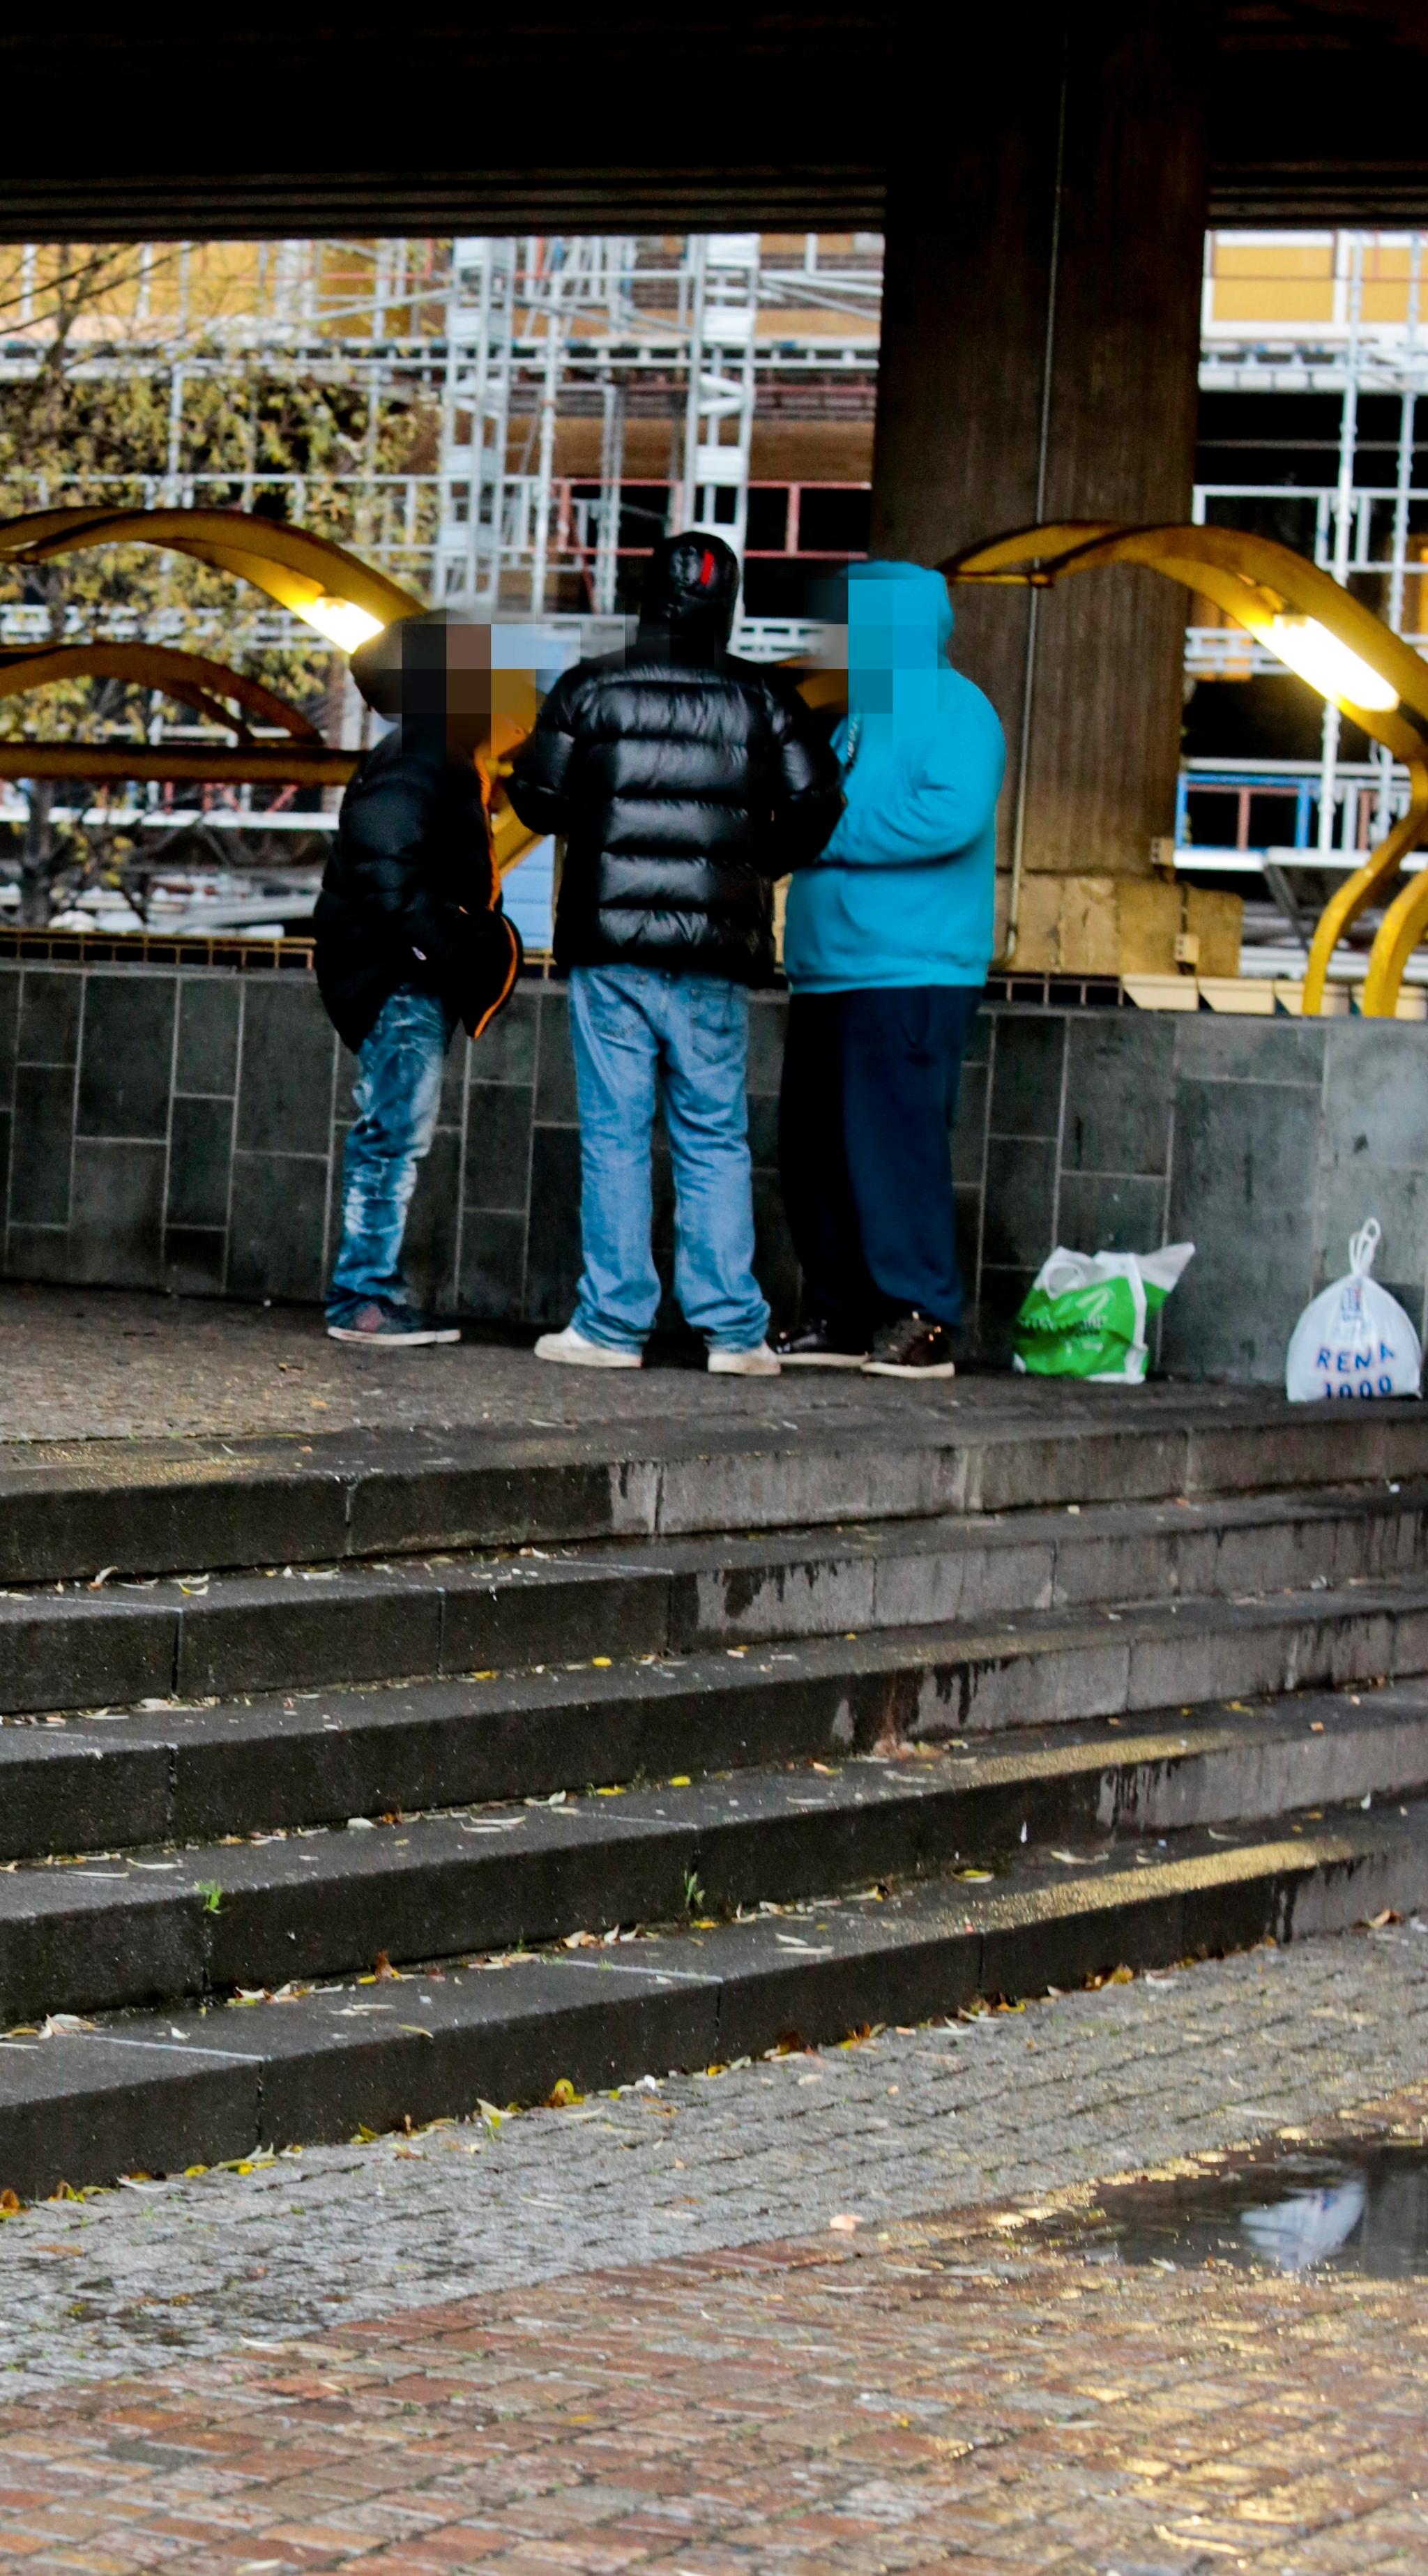 Noen fortvilte foreldre sender sine unge til utlandet for å få dem unna kriminelle gjenger og rusmiljøer. Men Oslo-politiets gatepatrulje ser at mange unge som er blitt sendt vekk, ofte kommer tilbake til en enda mer rotløs tilværelse med rusmisbruk og kriminalitet i Oslo. 